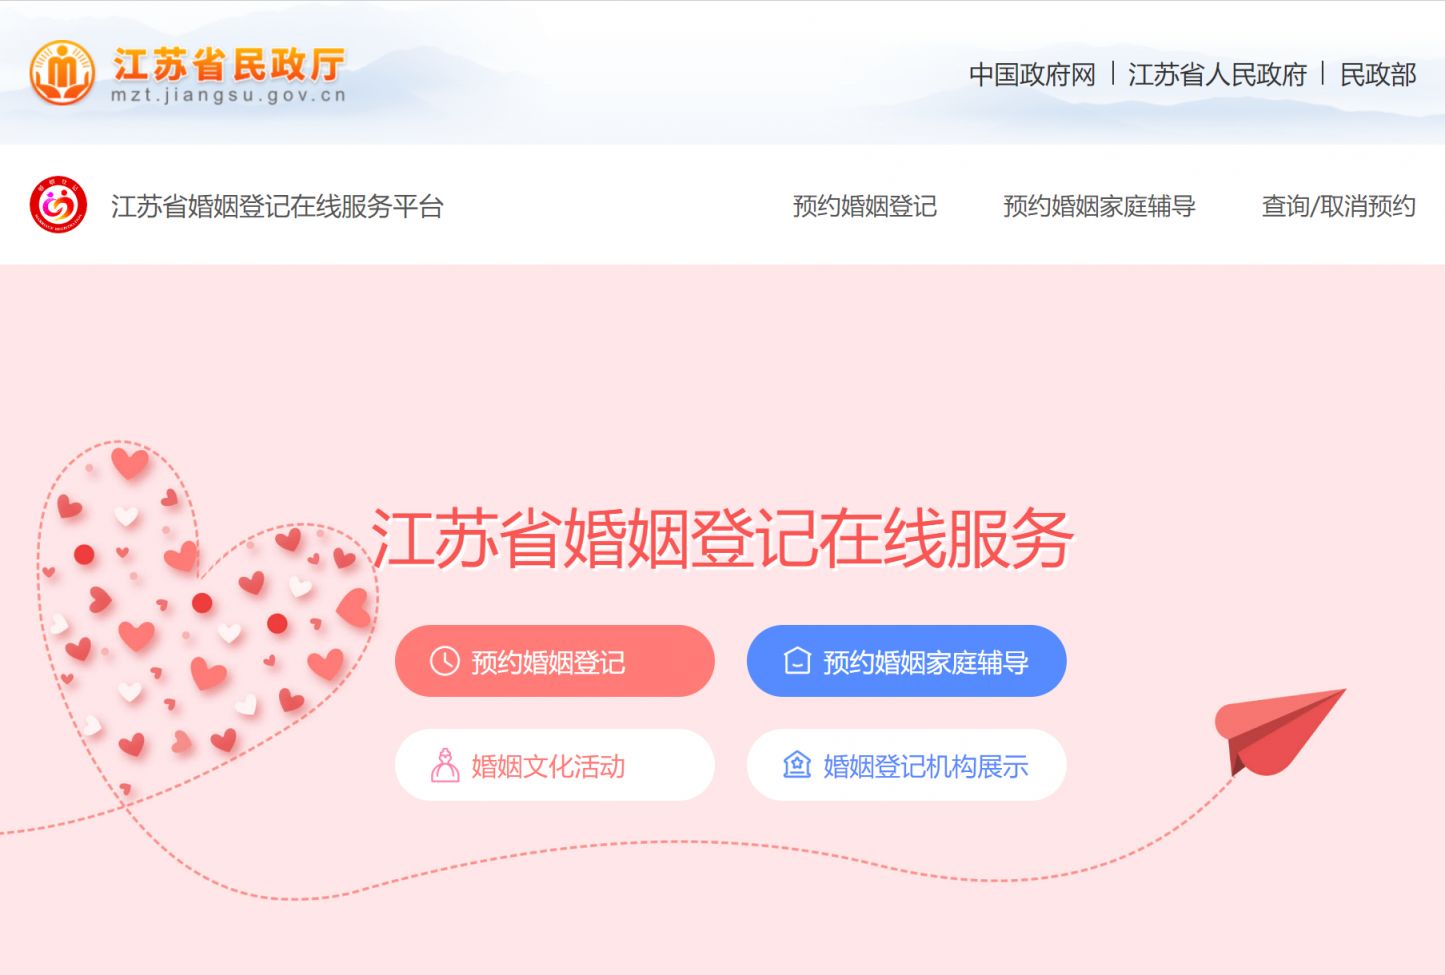 扬州结婚登记网上预约流程简介